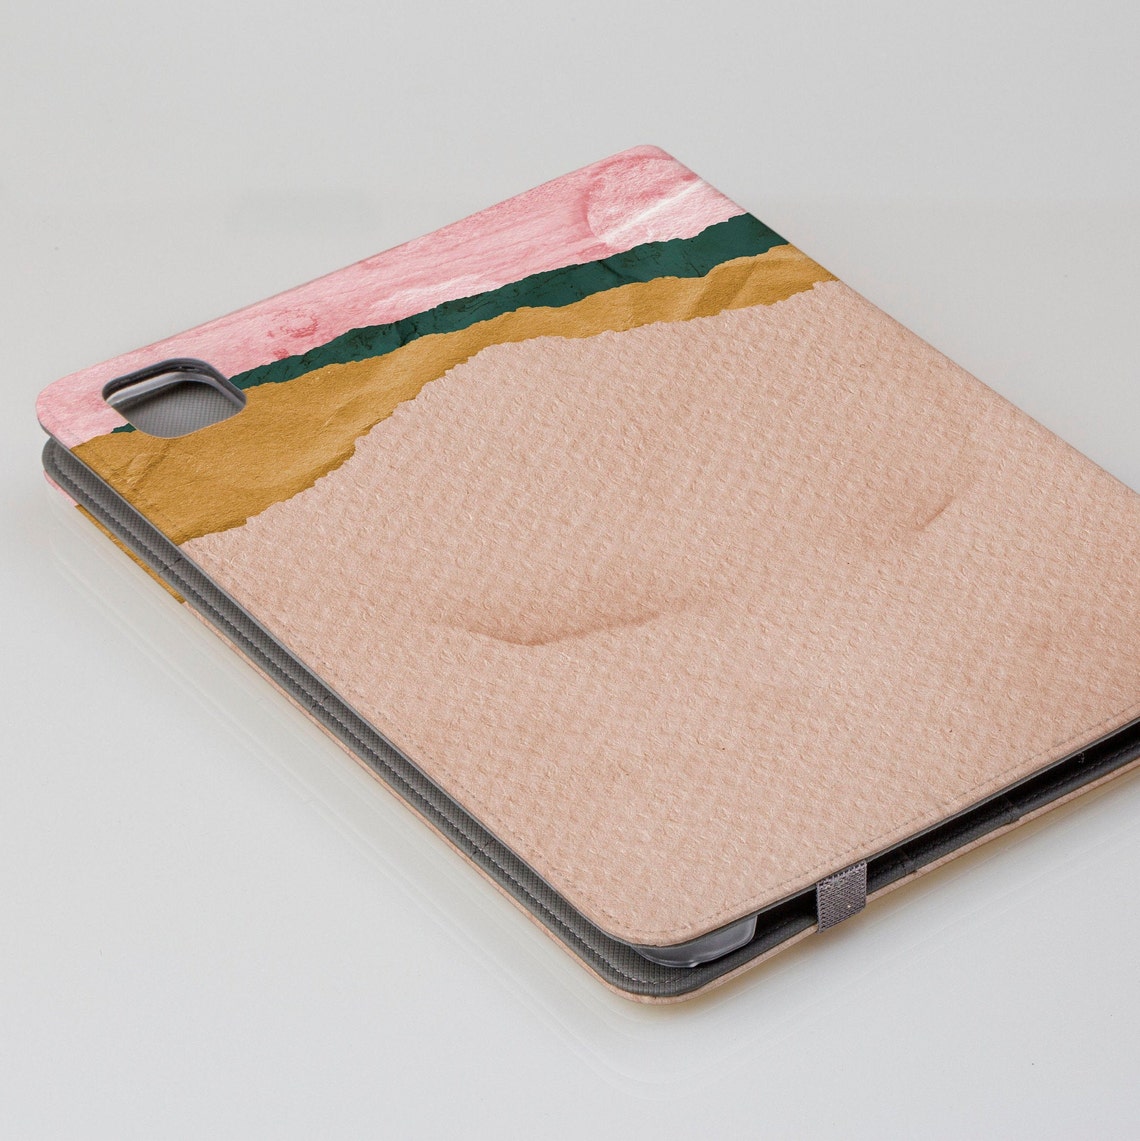 Aesthetic iPad Pro Personalised Folio Case iPad Pro 12.9 | Etsy